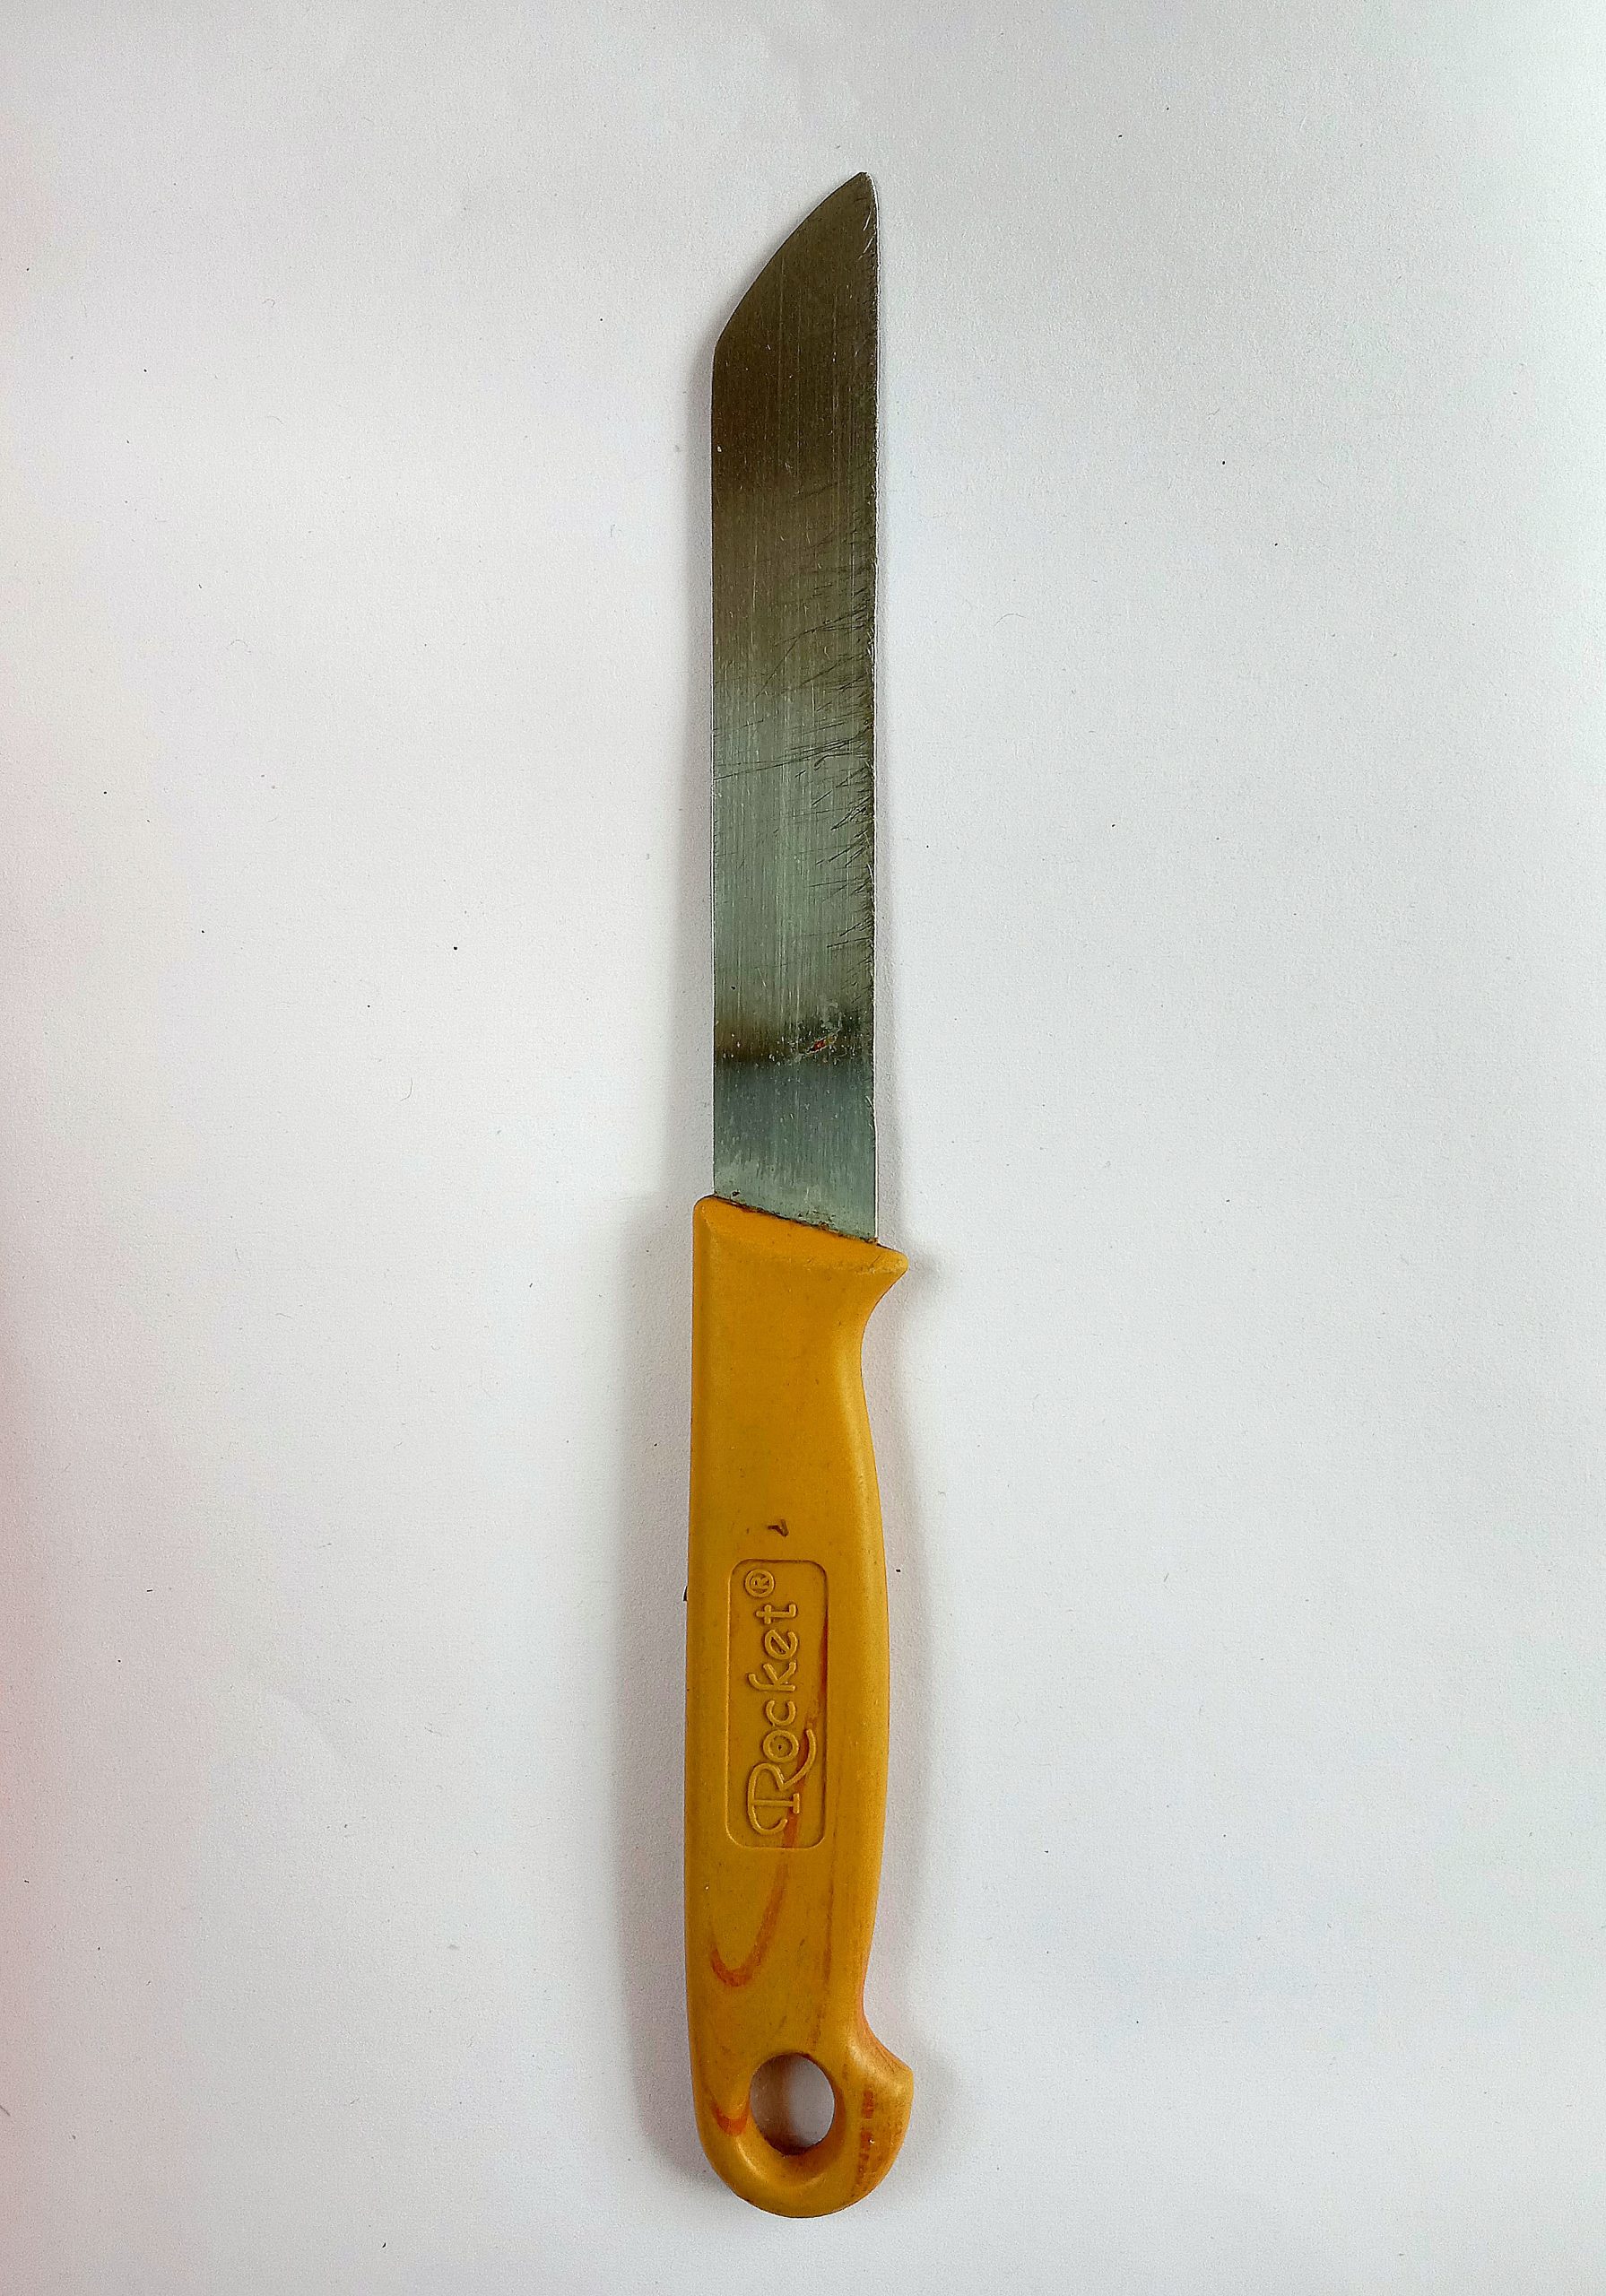 A kitchen knife